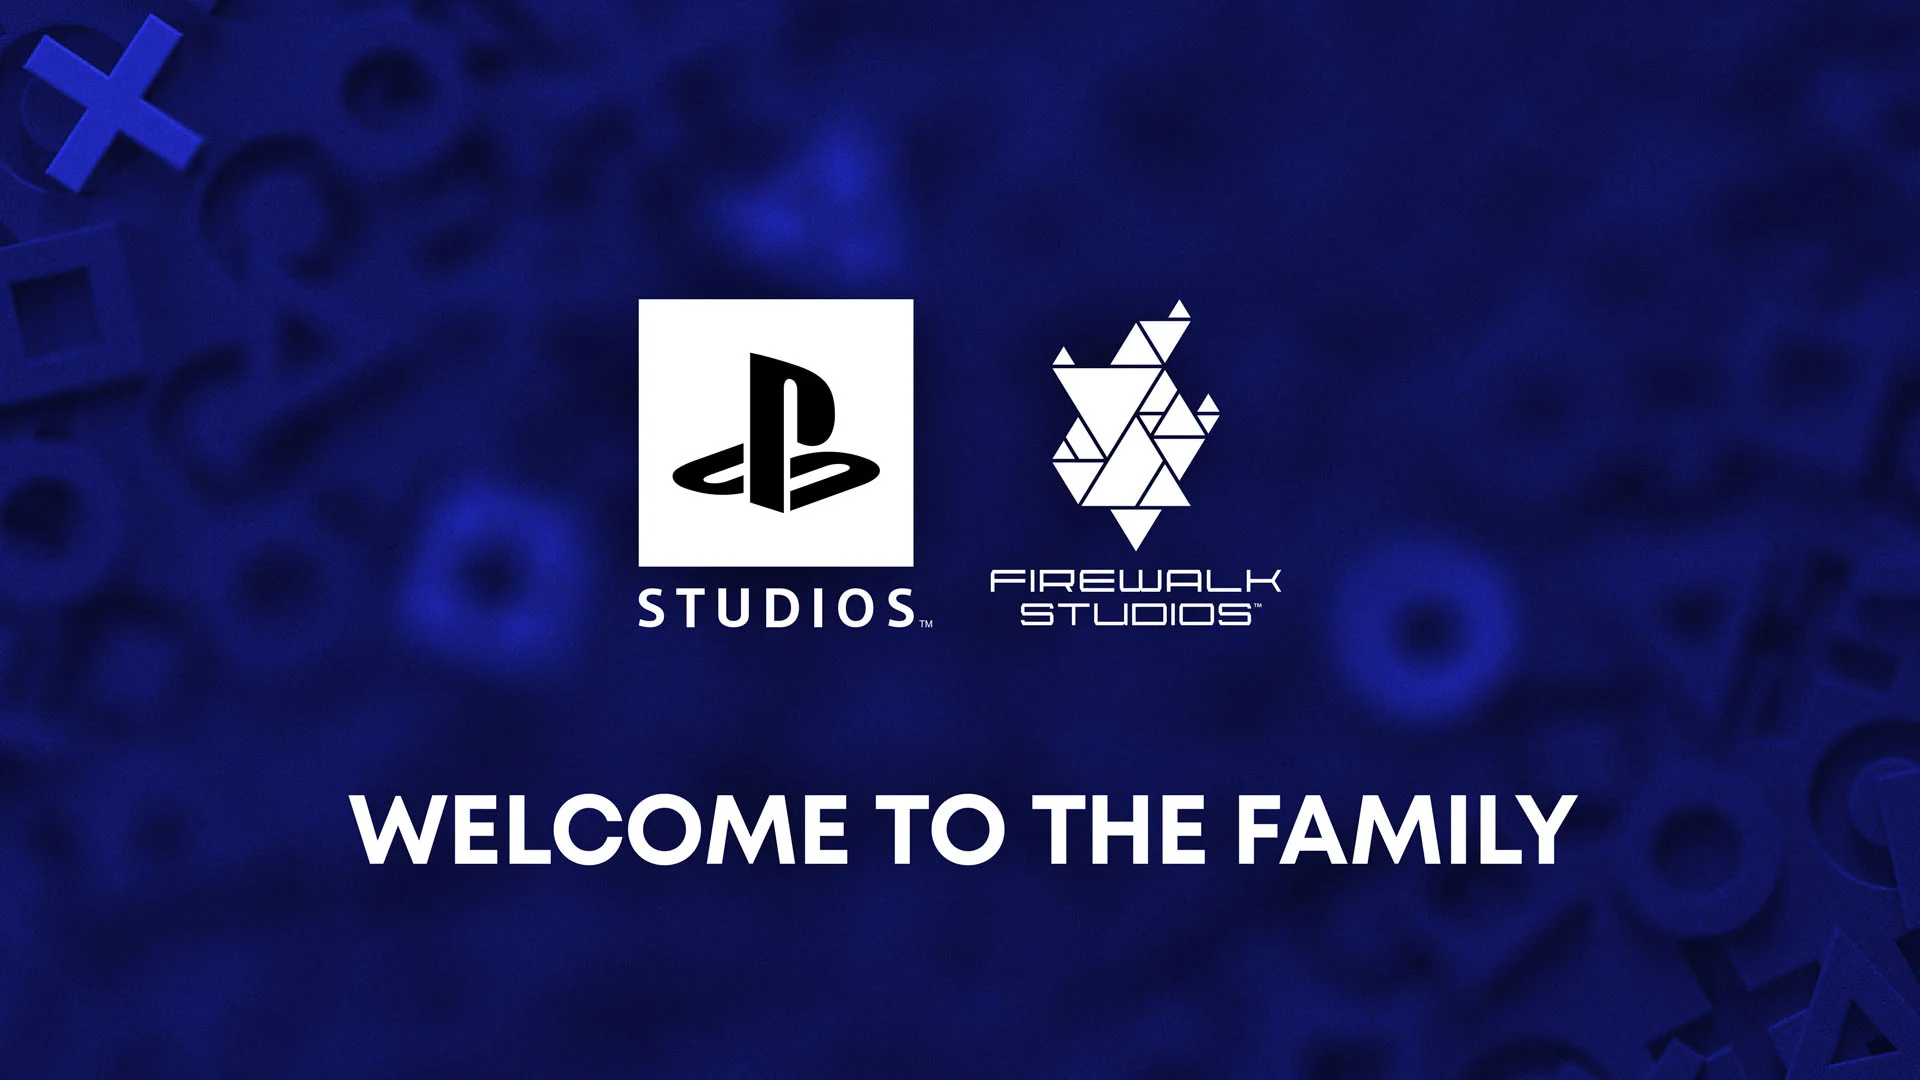 Sony купила Firewalk Studios, которая работает над MMO-игрой для PlayStation - фото 1